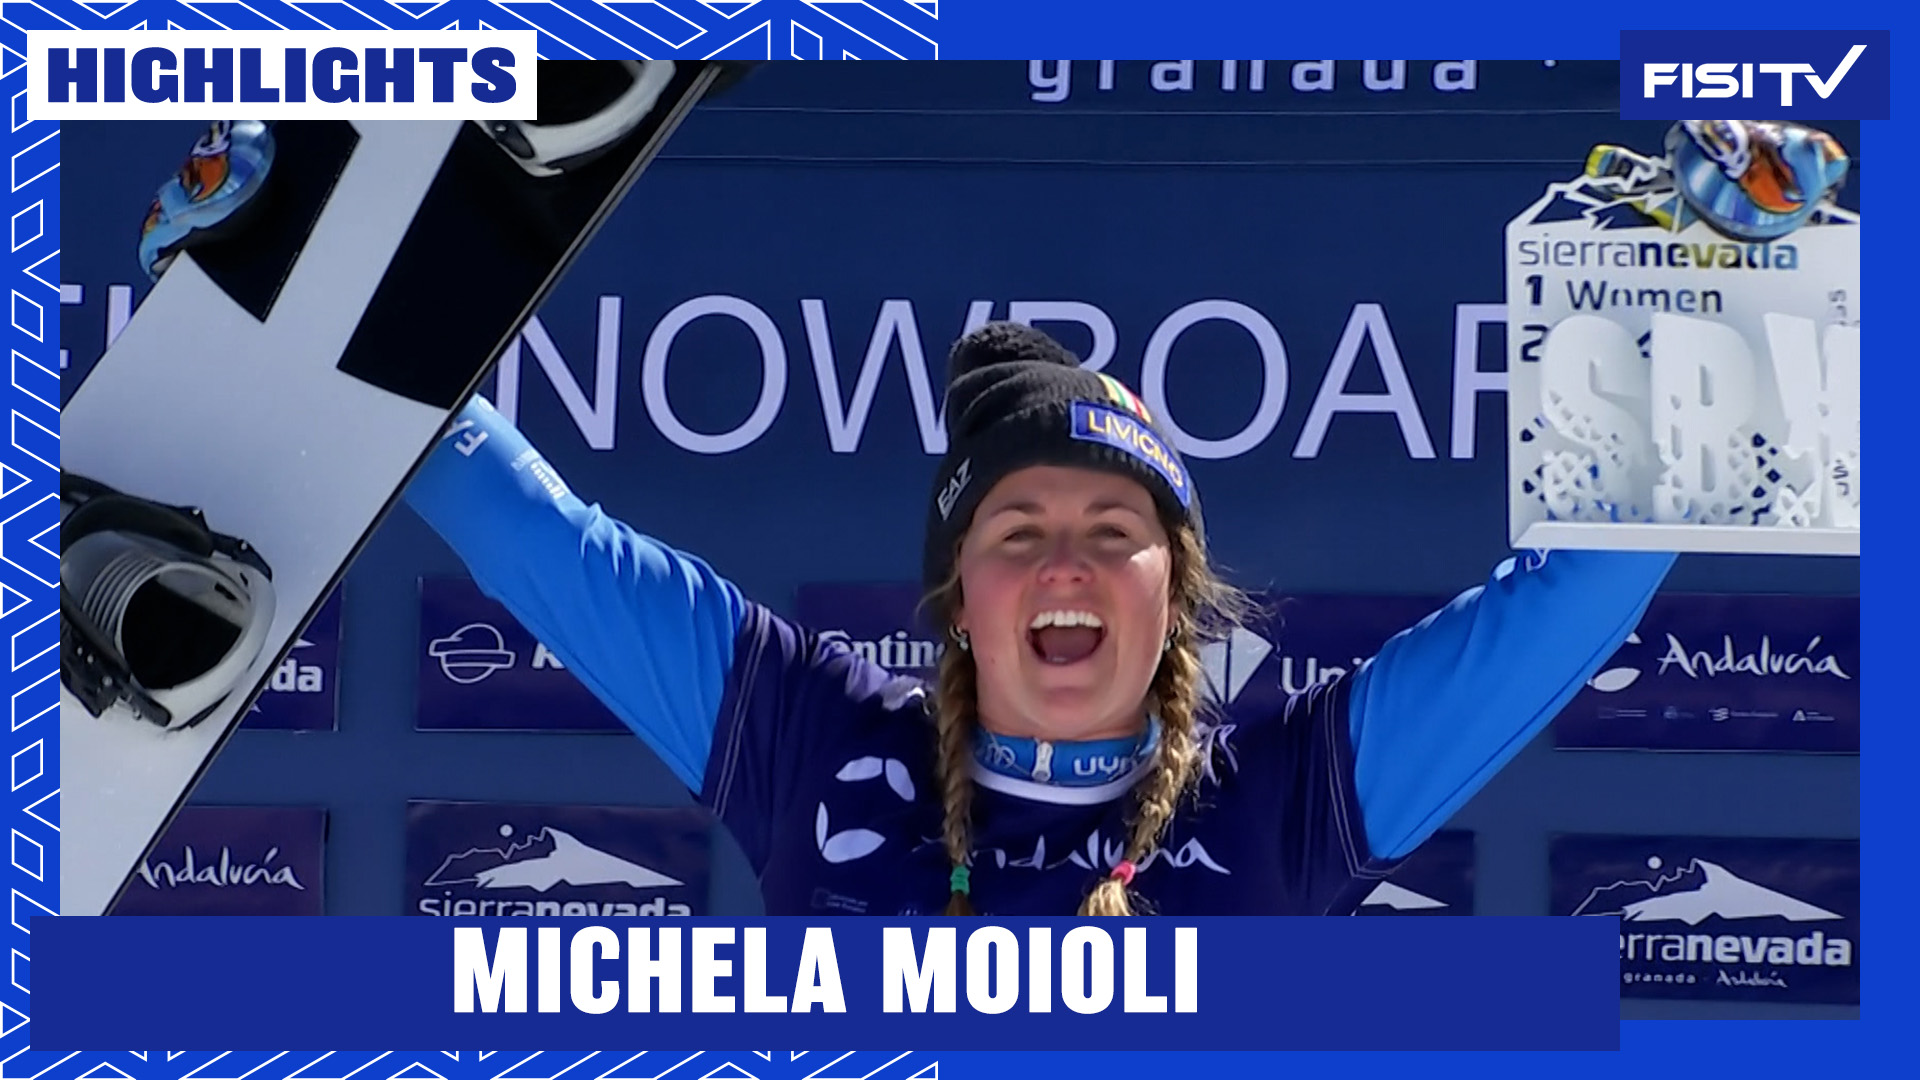 Michela Moioli ritorna alla vittoria in Coppa del Mondo | FISI TV